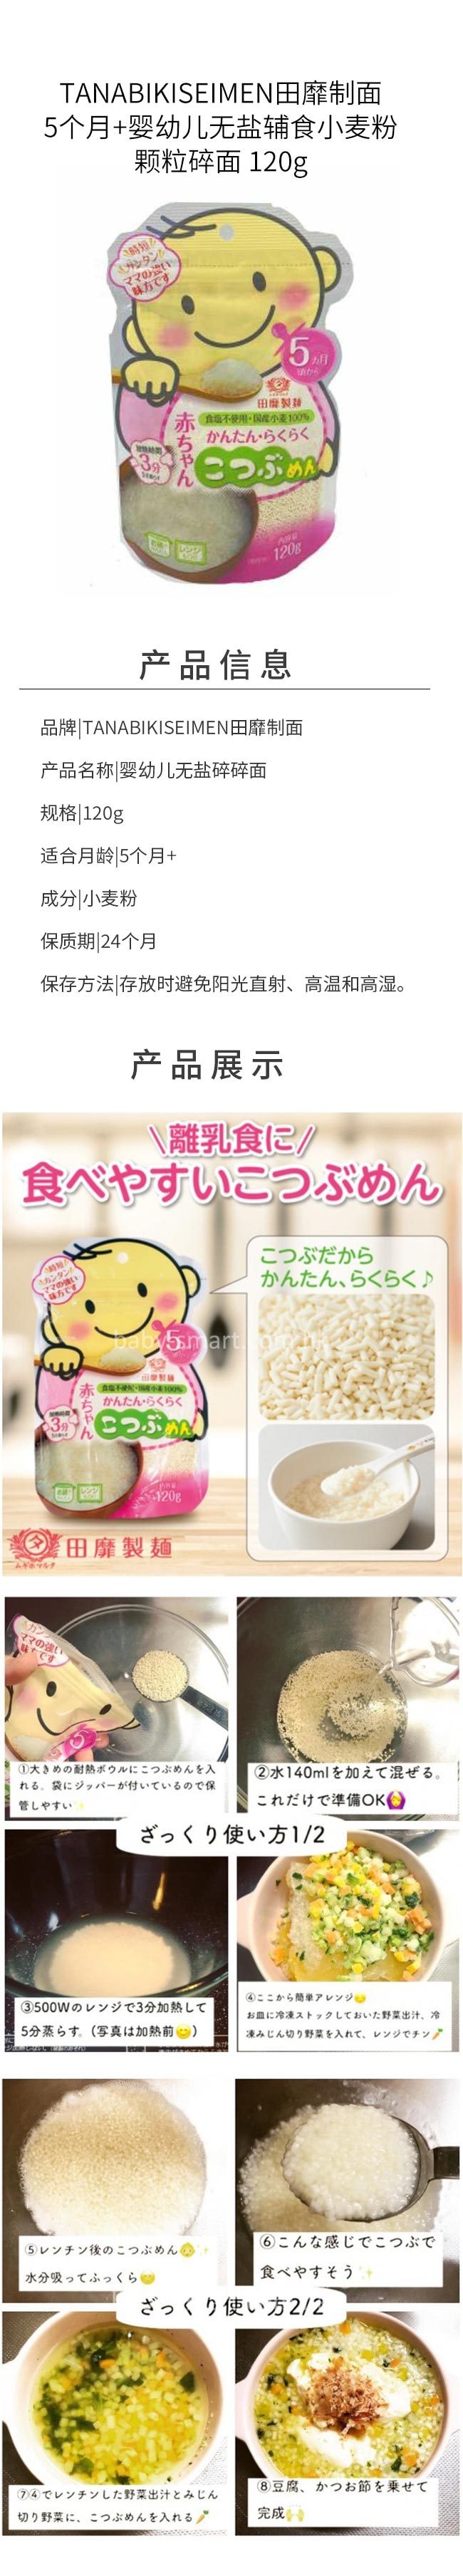 【日本直邮】TANABIKISEIMEN田靡制面 5个月+婴幼儿无盐辅食小麦粉颗粒碎面 120g